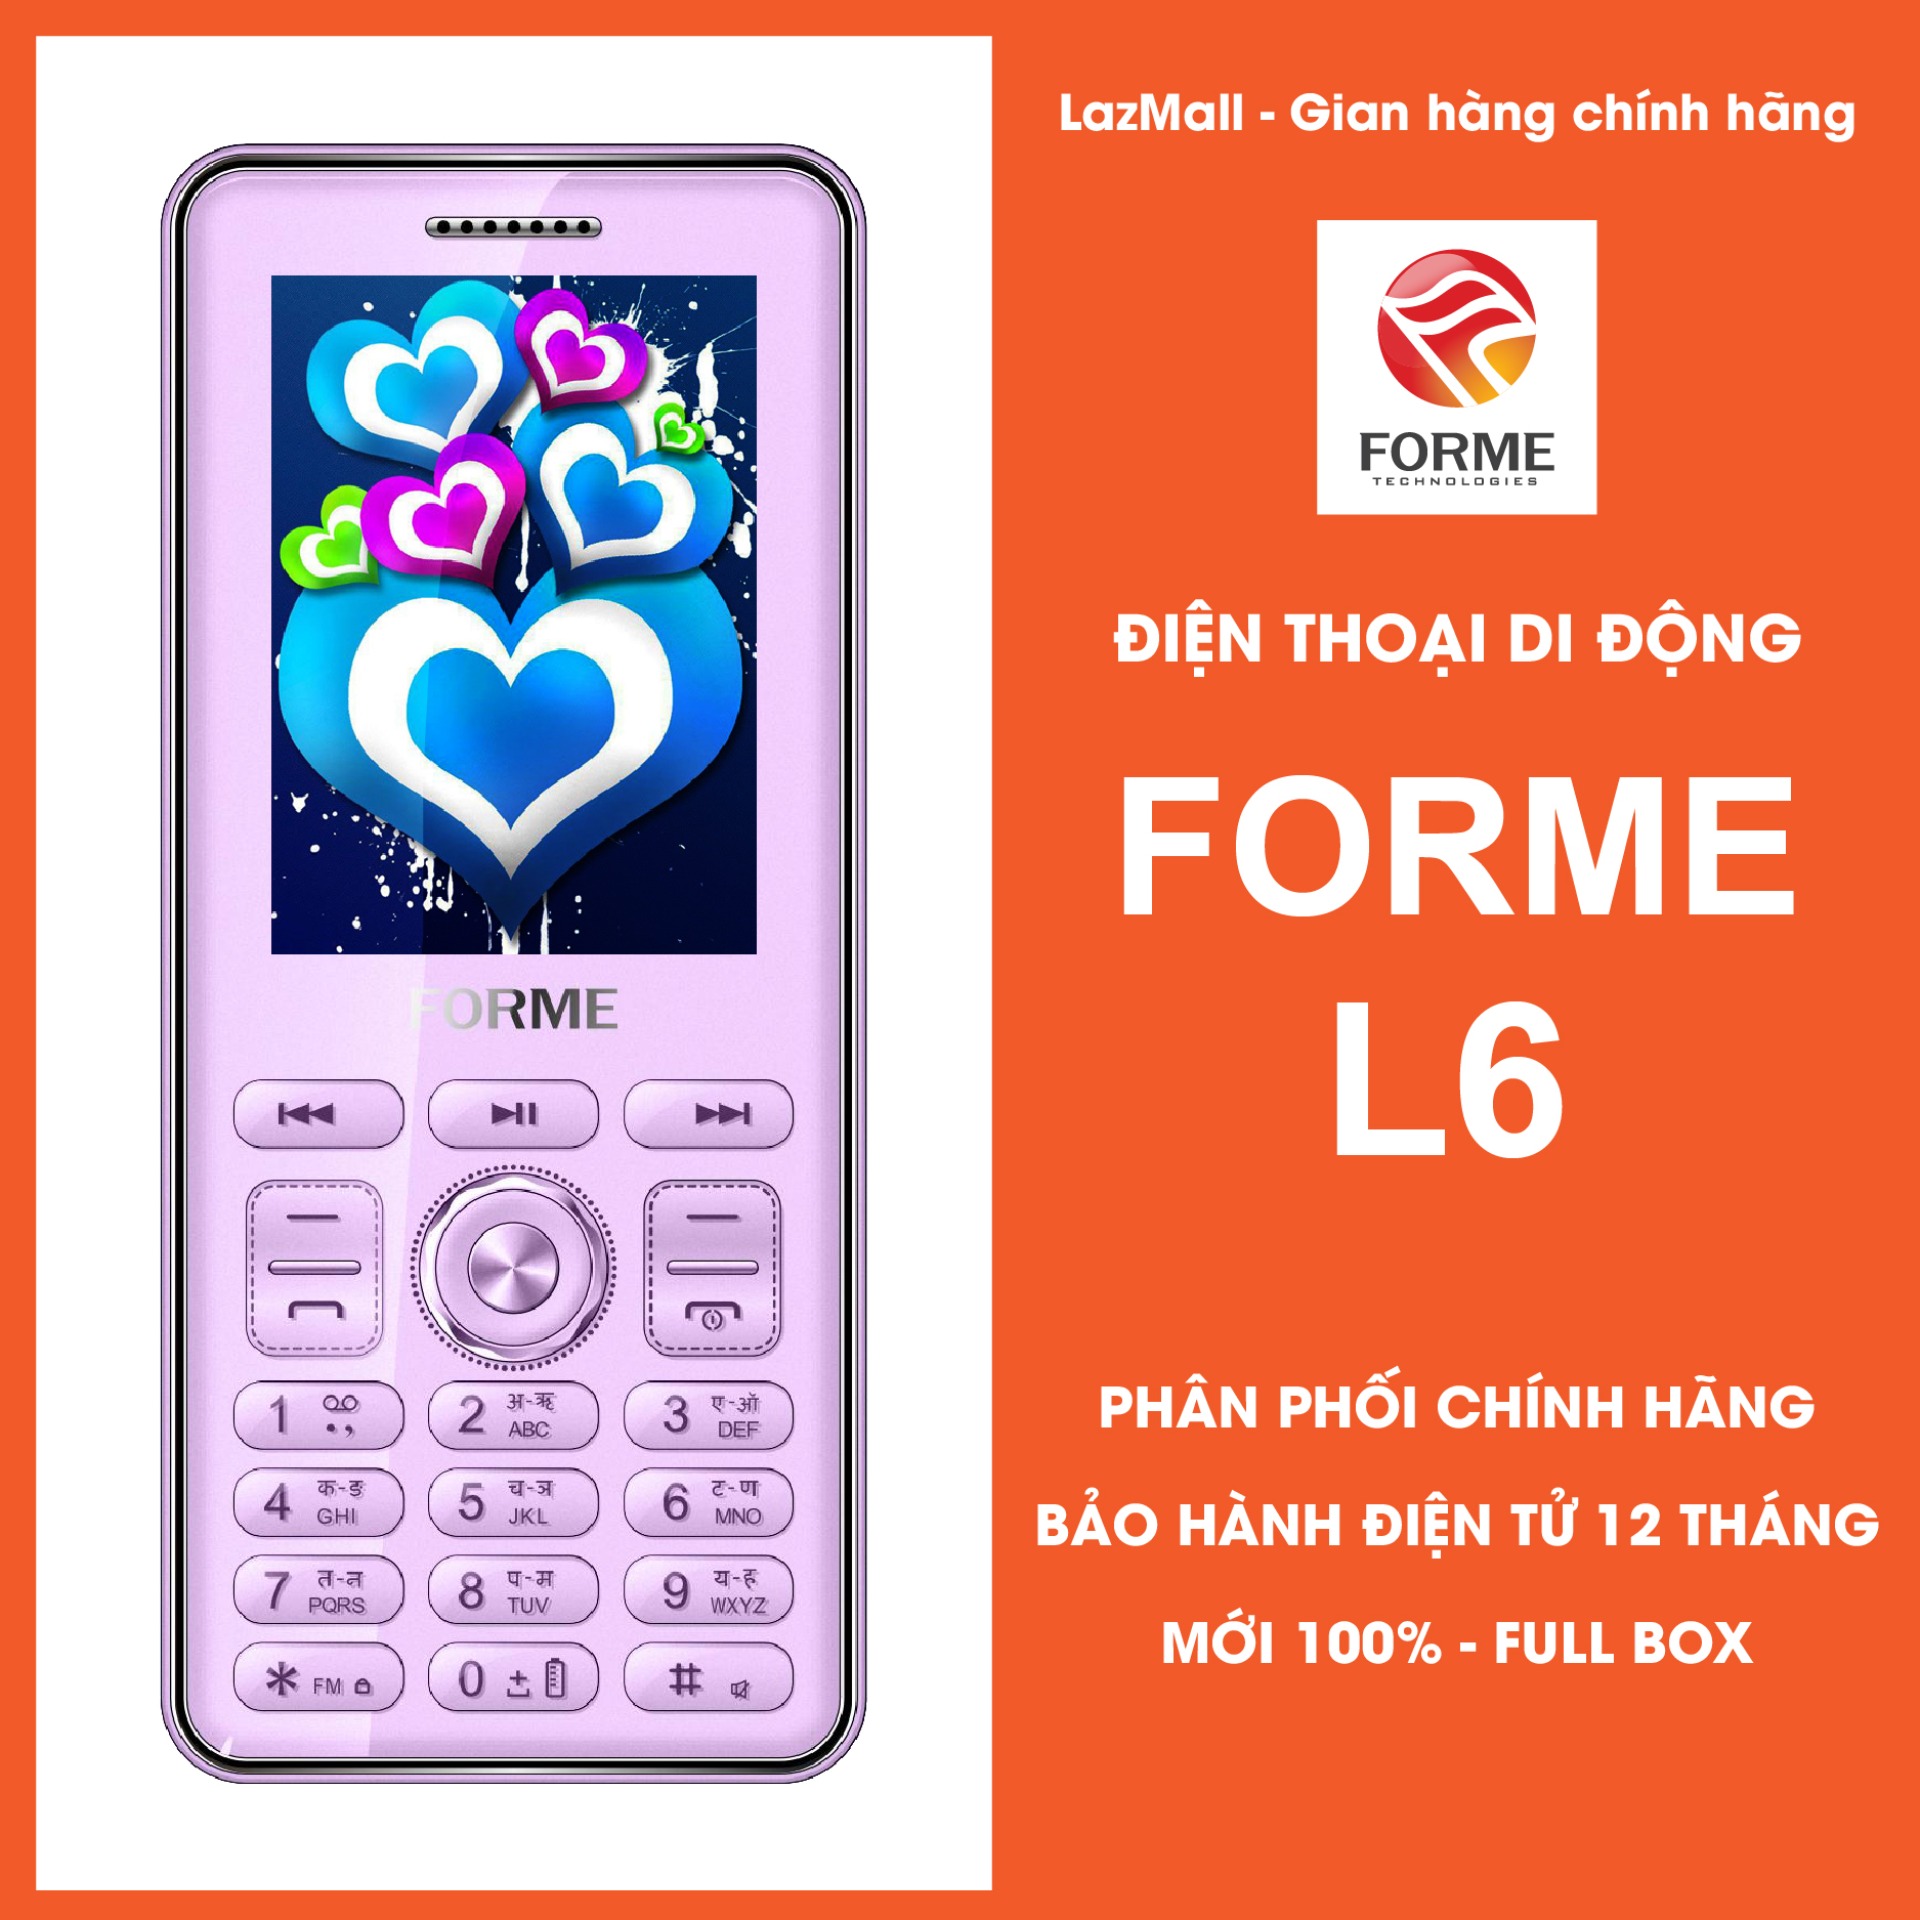 Điện thoại giá rẻ Forme L6, màn hình 2.4inch, Pin 1800mAh, phím mica, font chữ lớn, 2sim, nghe FM, bluetooth – Phân phối chính hãng